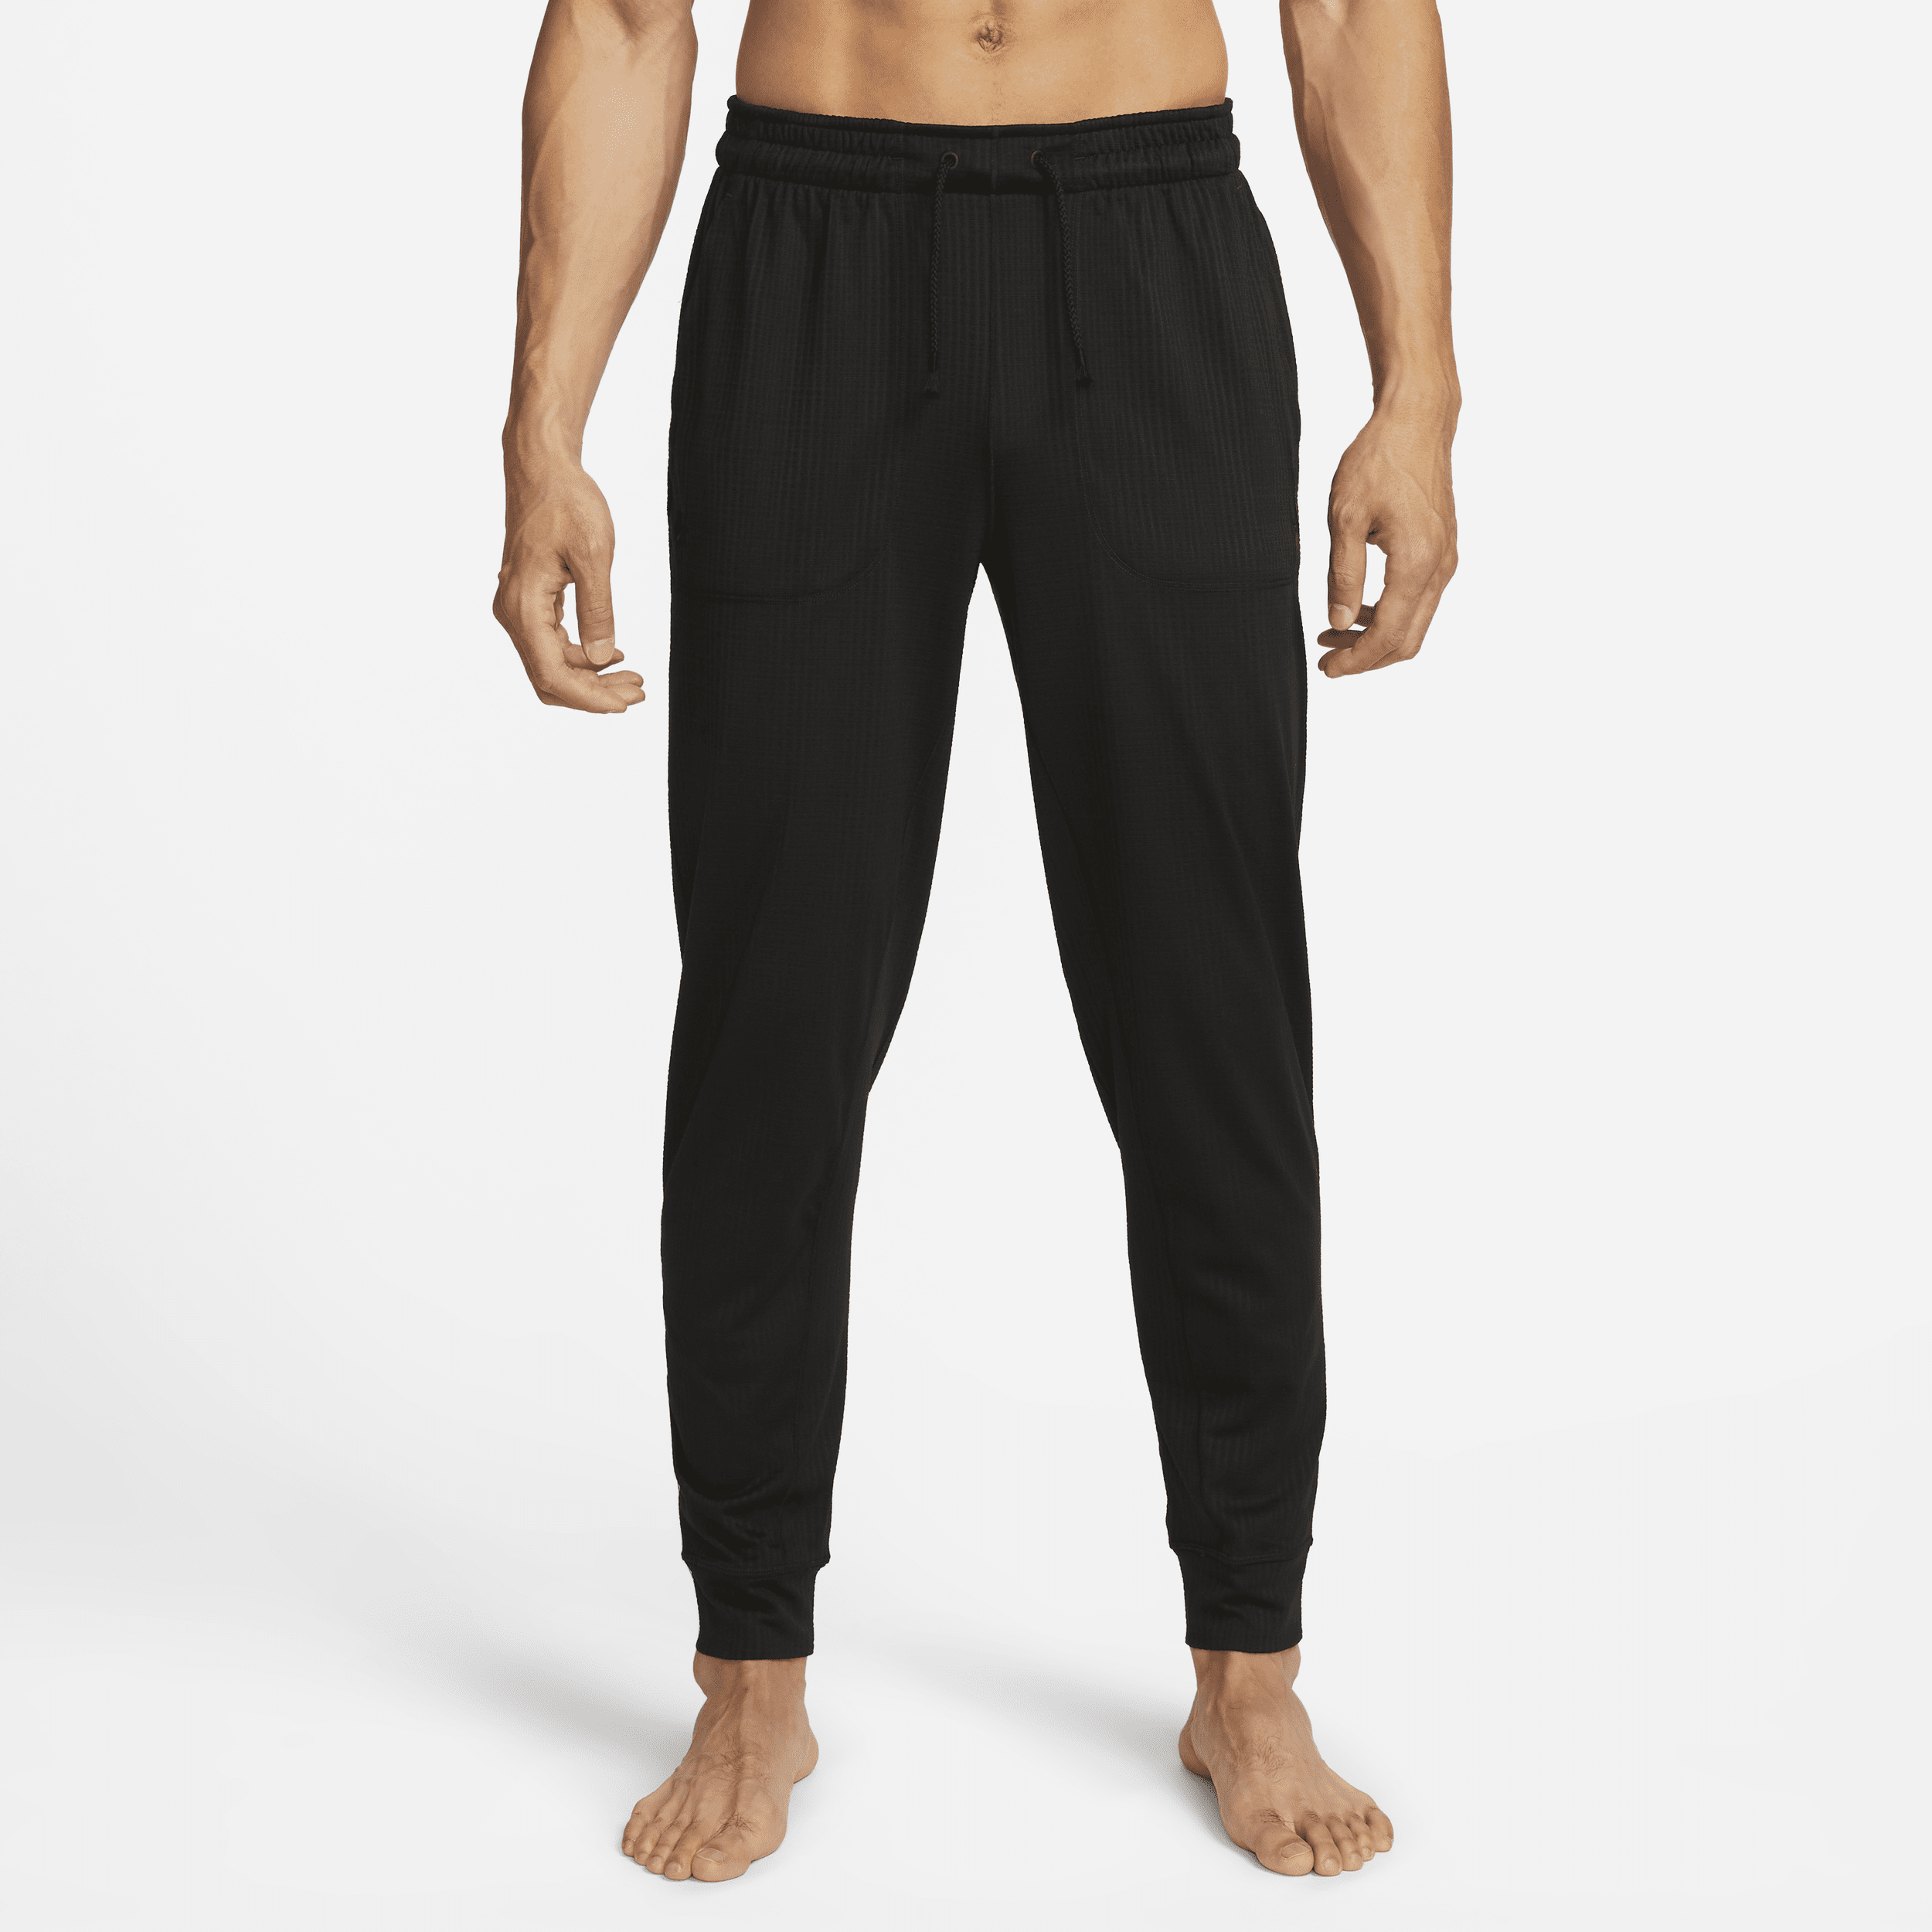 Pantaloni jogger Nike Yoga Dri-FIT – Uomo - Nero